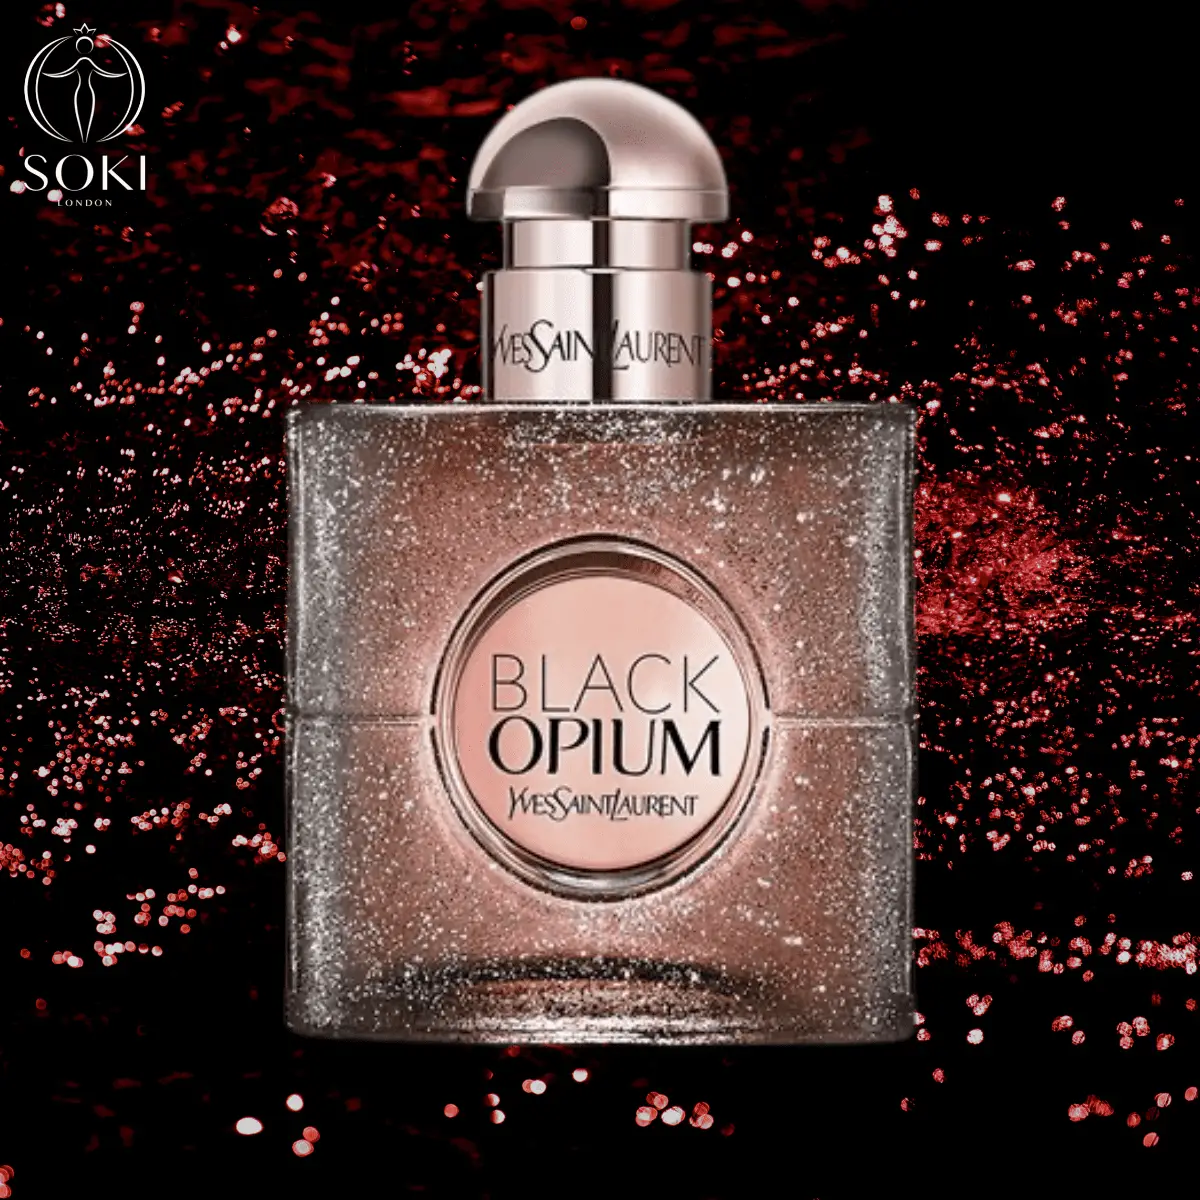 YSL Black Opium Hair Mist
Best perfume hair mists